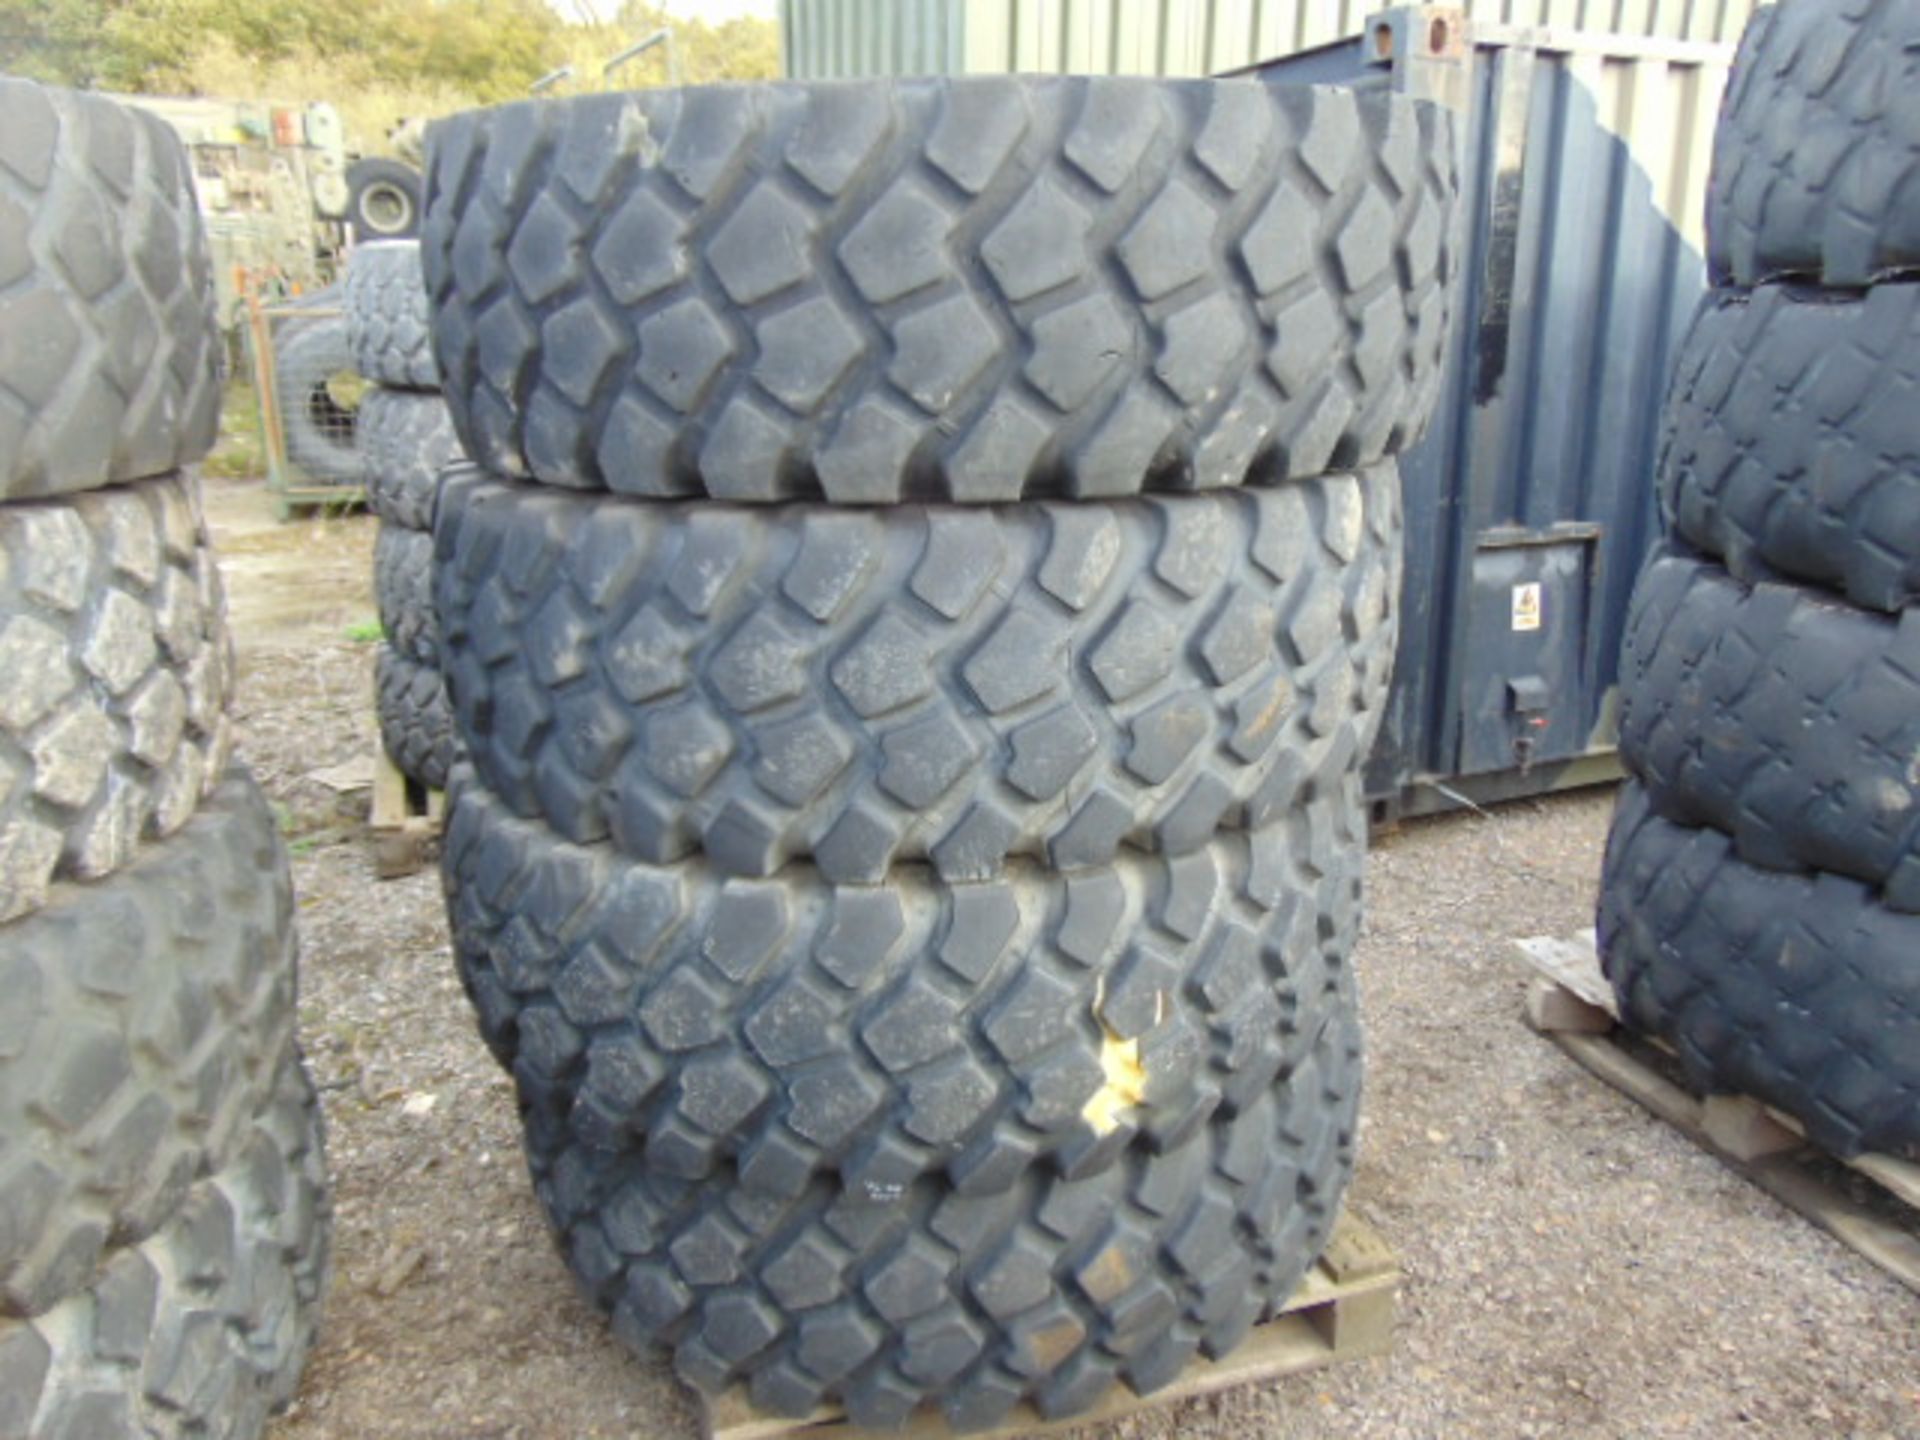 4 x Michelin 16.00 R20 XZL Tyres